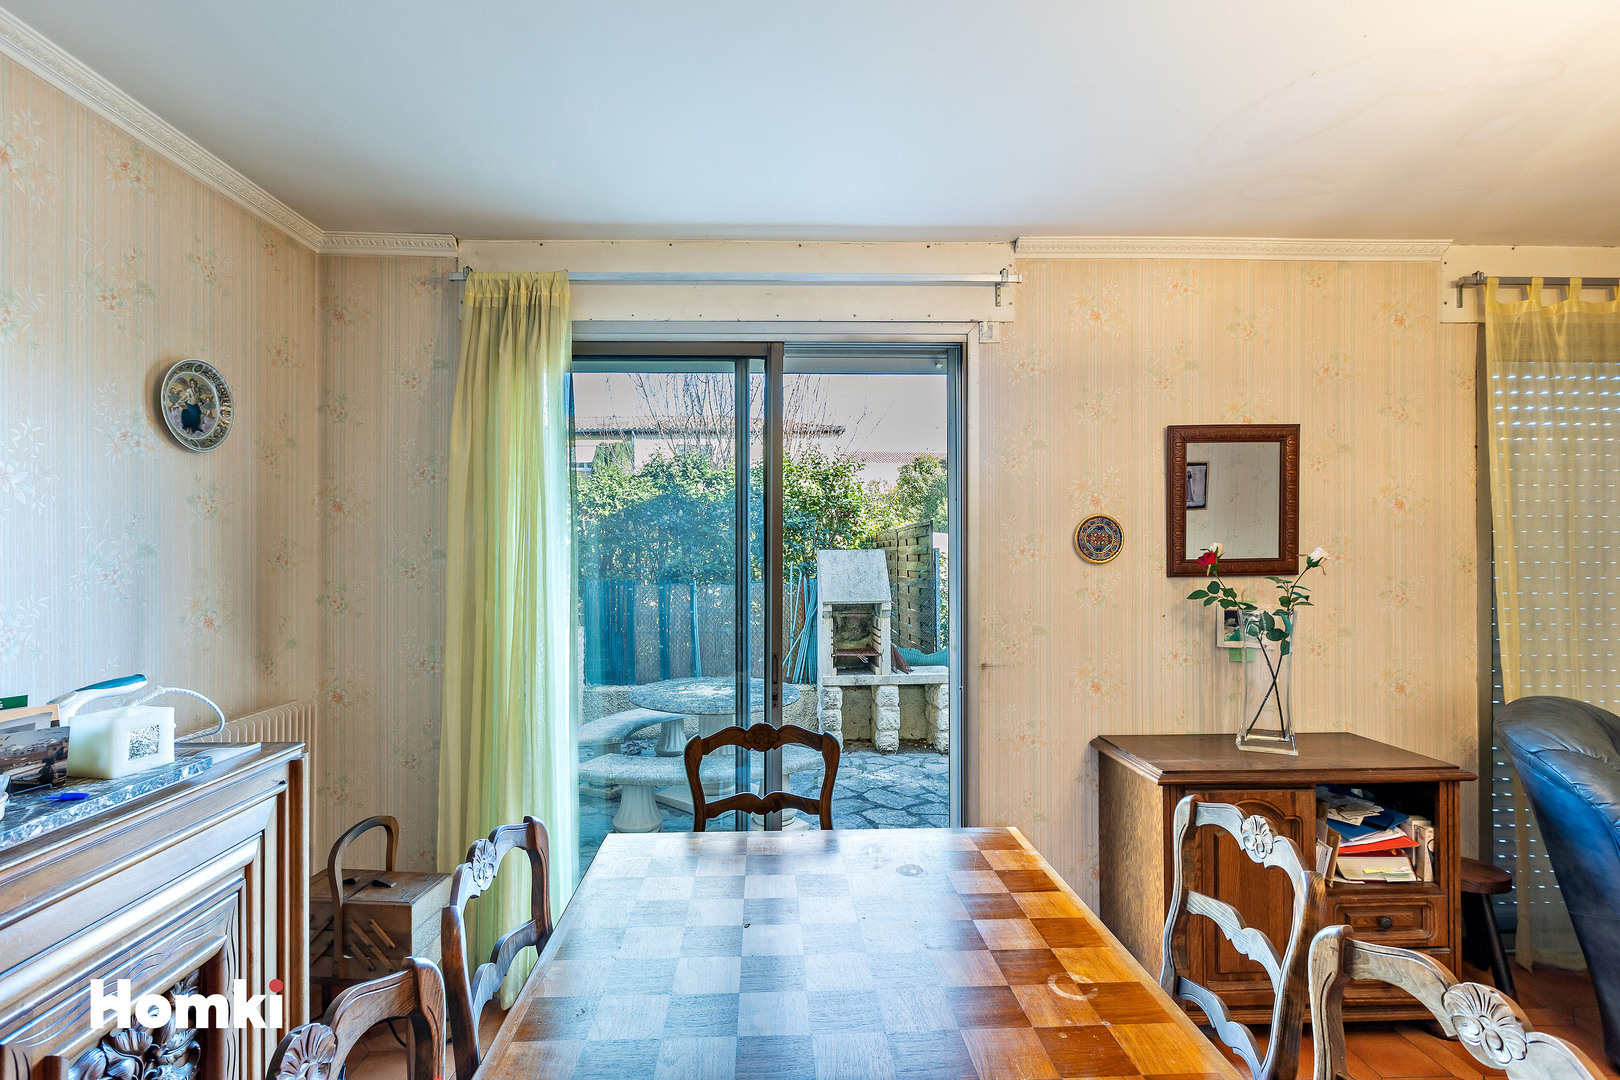 Homki - Vente Maison/villa  de 80.0 m² à Béziers 34500